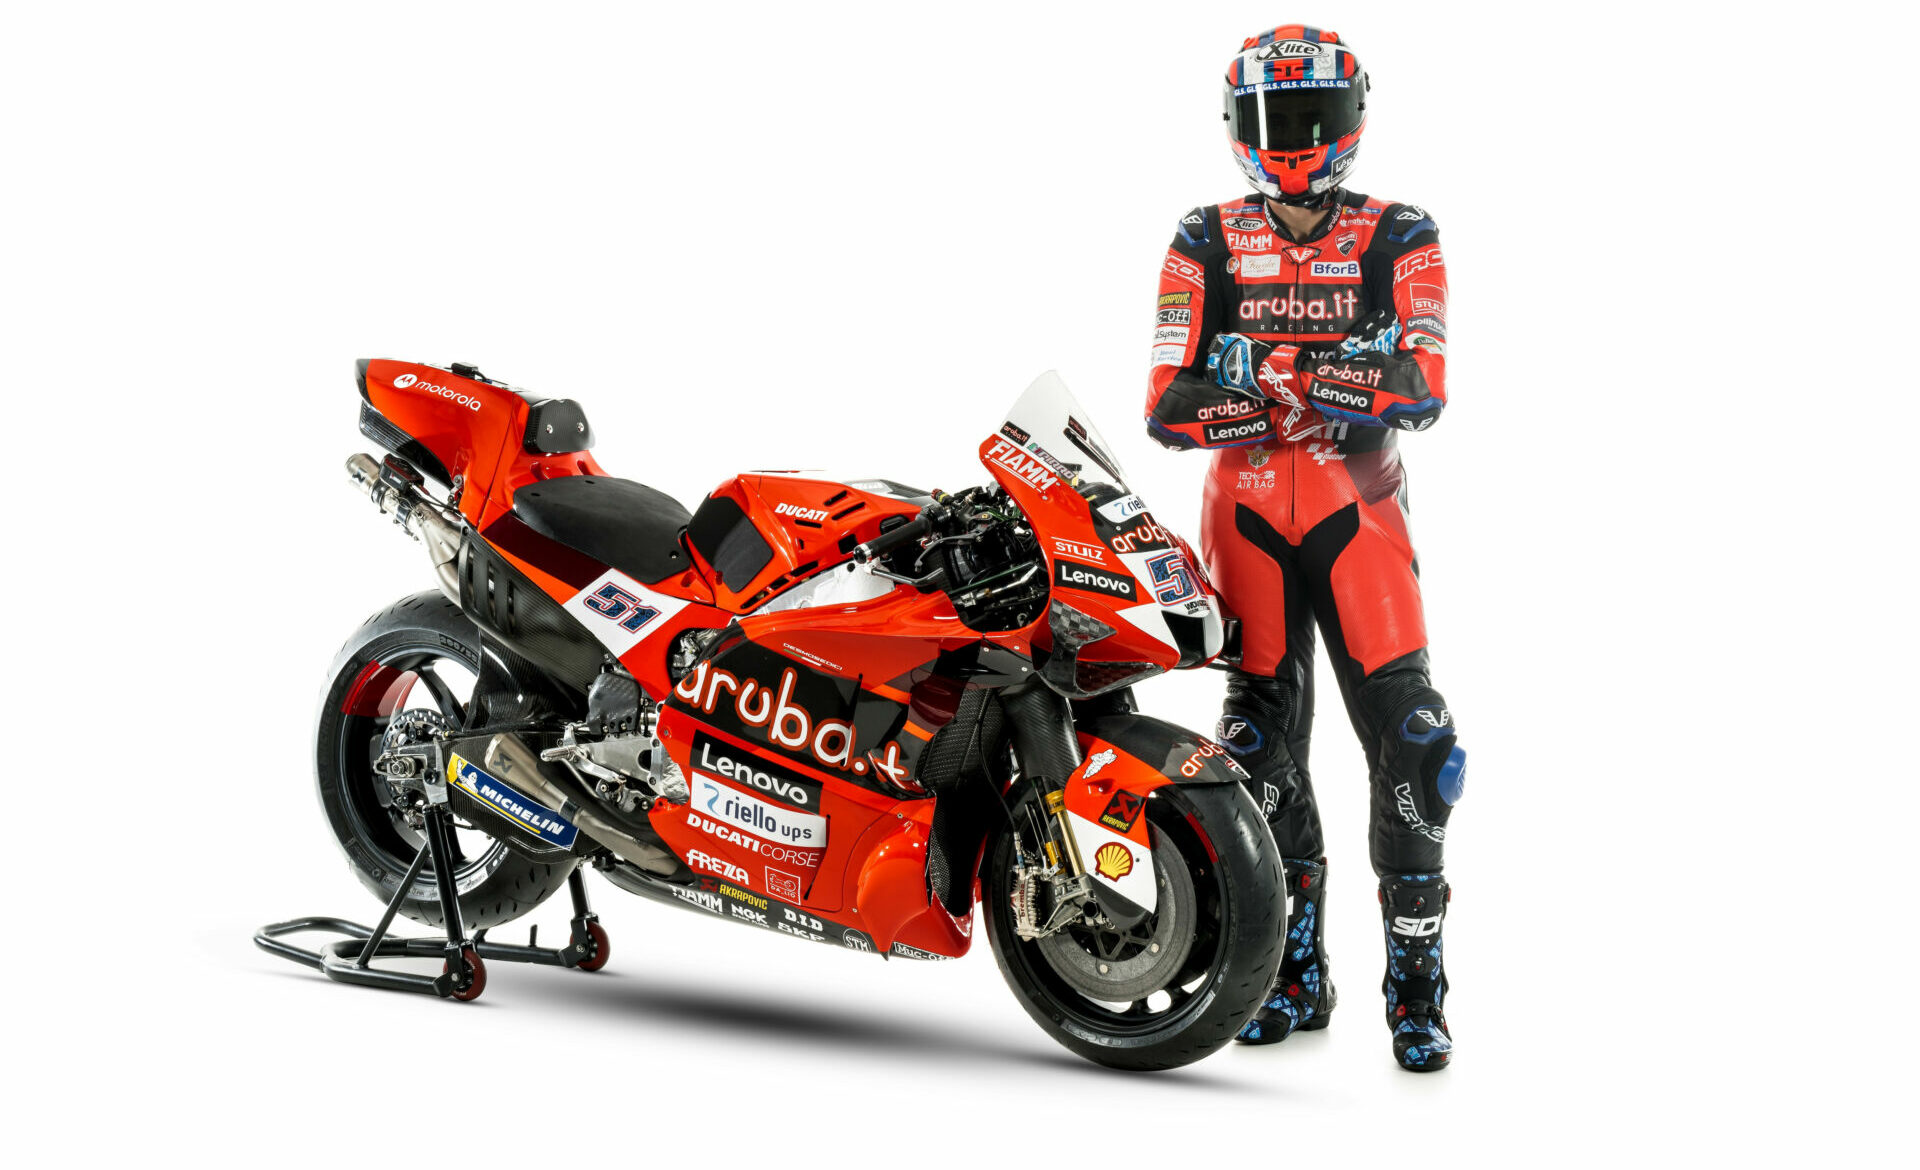 Michele Pirro and his Aruba.it-branded Ducati Desmosedici. Photo courtesy Ducati.